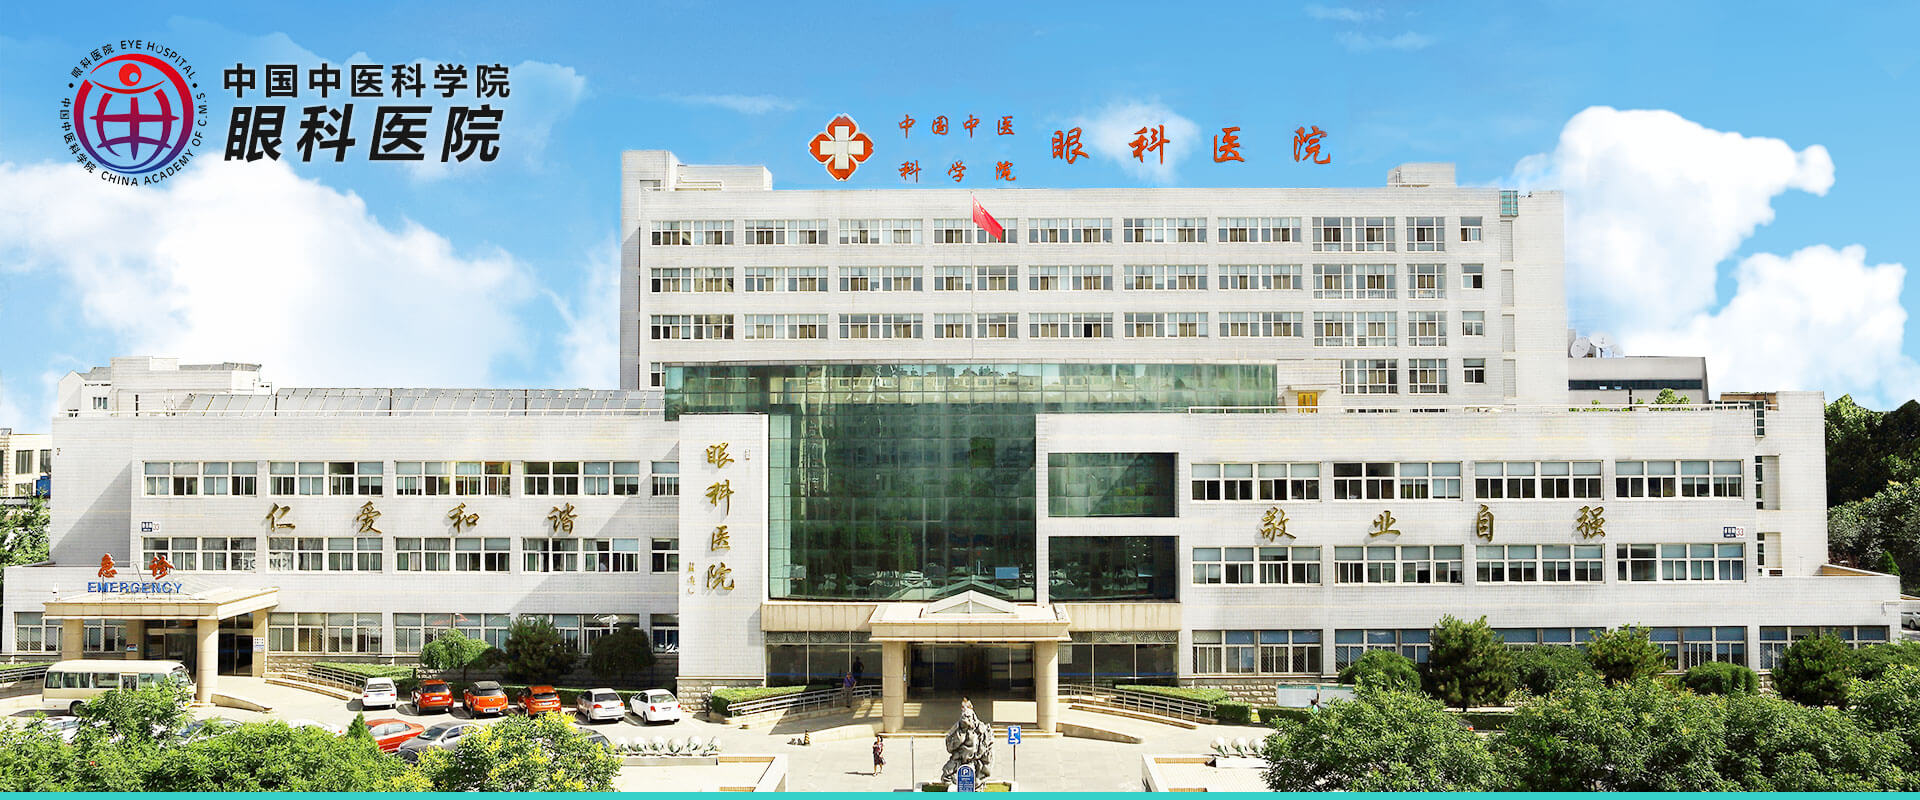 关于中国中医科学院西苑医院贩子联系方式「找对人就有号」的信息